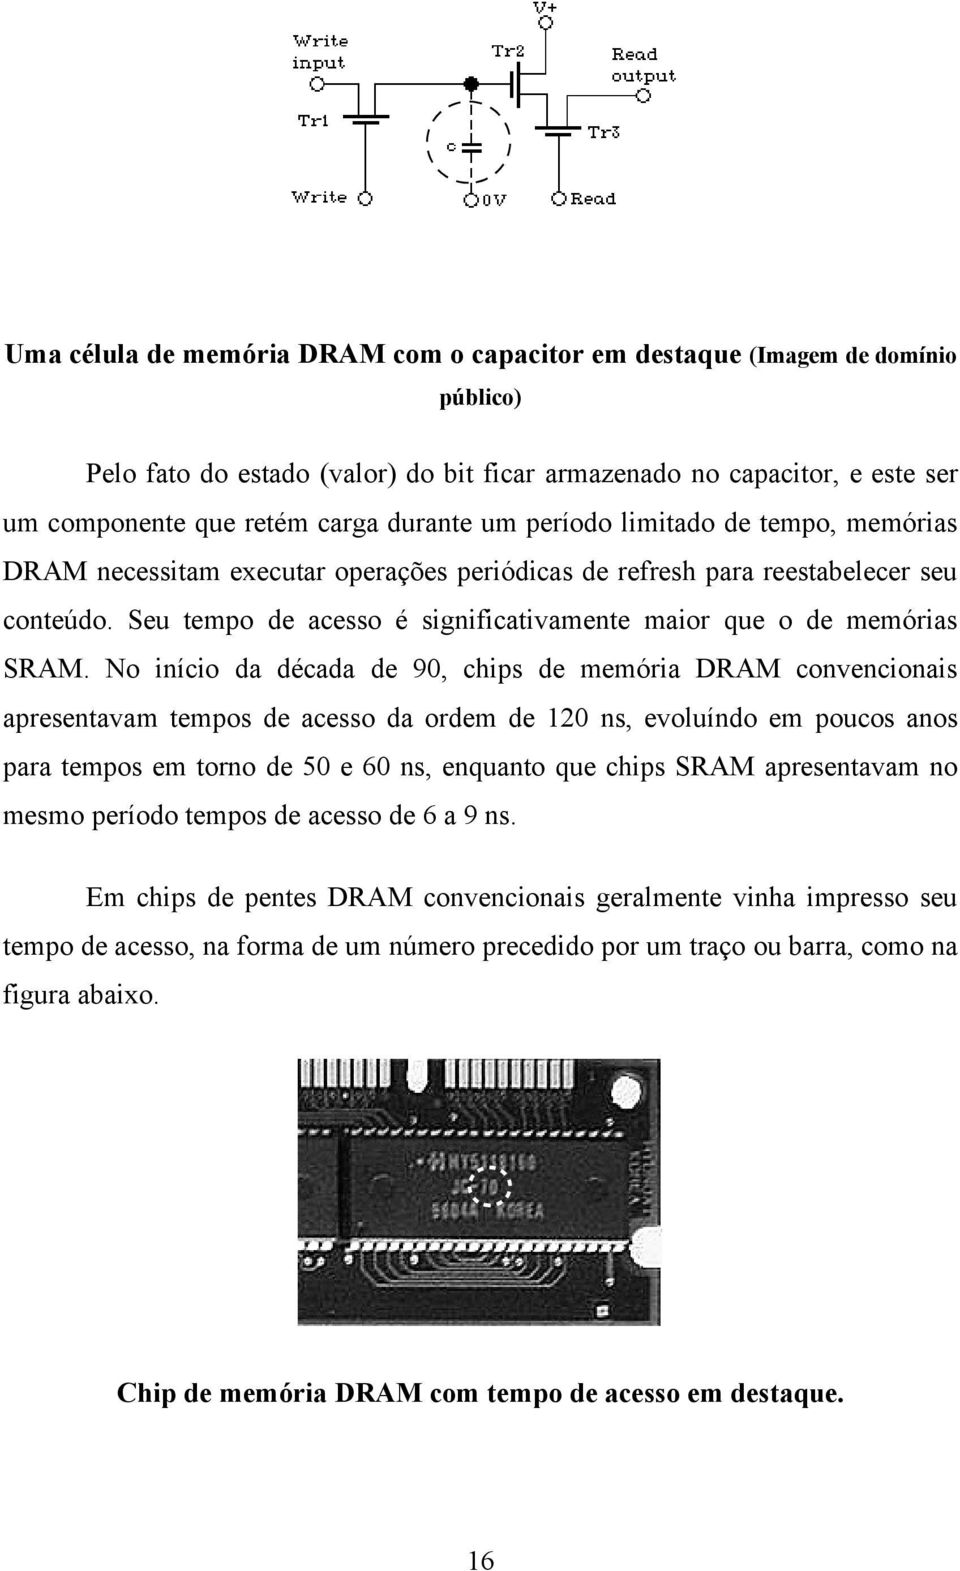 No início da década de 90, chips de memória DRAM convencionais apresentavam tempos de acesso da ordem de 120 ns, evoluíndo em poucos anos para tempos em torno de 50 e 60 ns, enquanto que chips SRAM